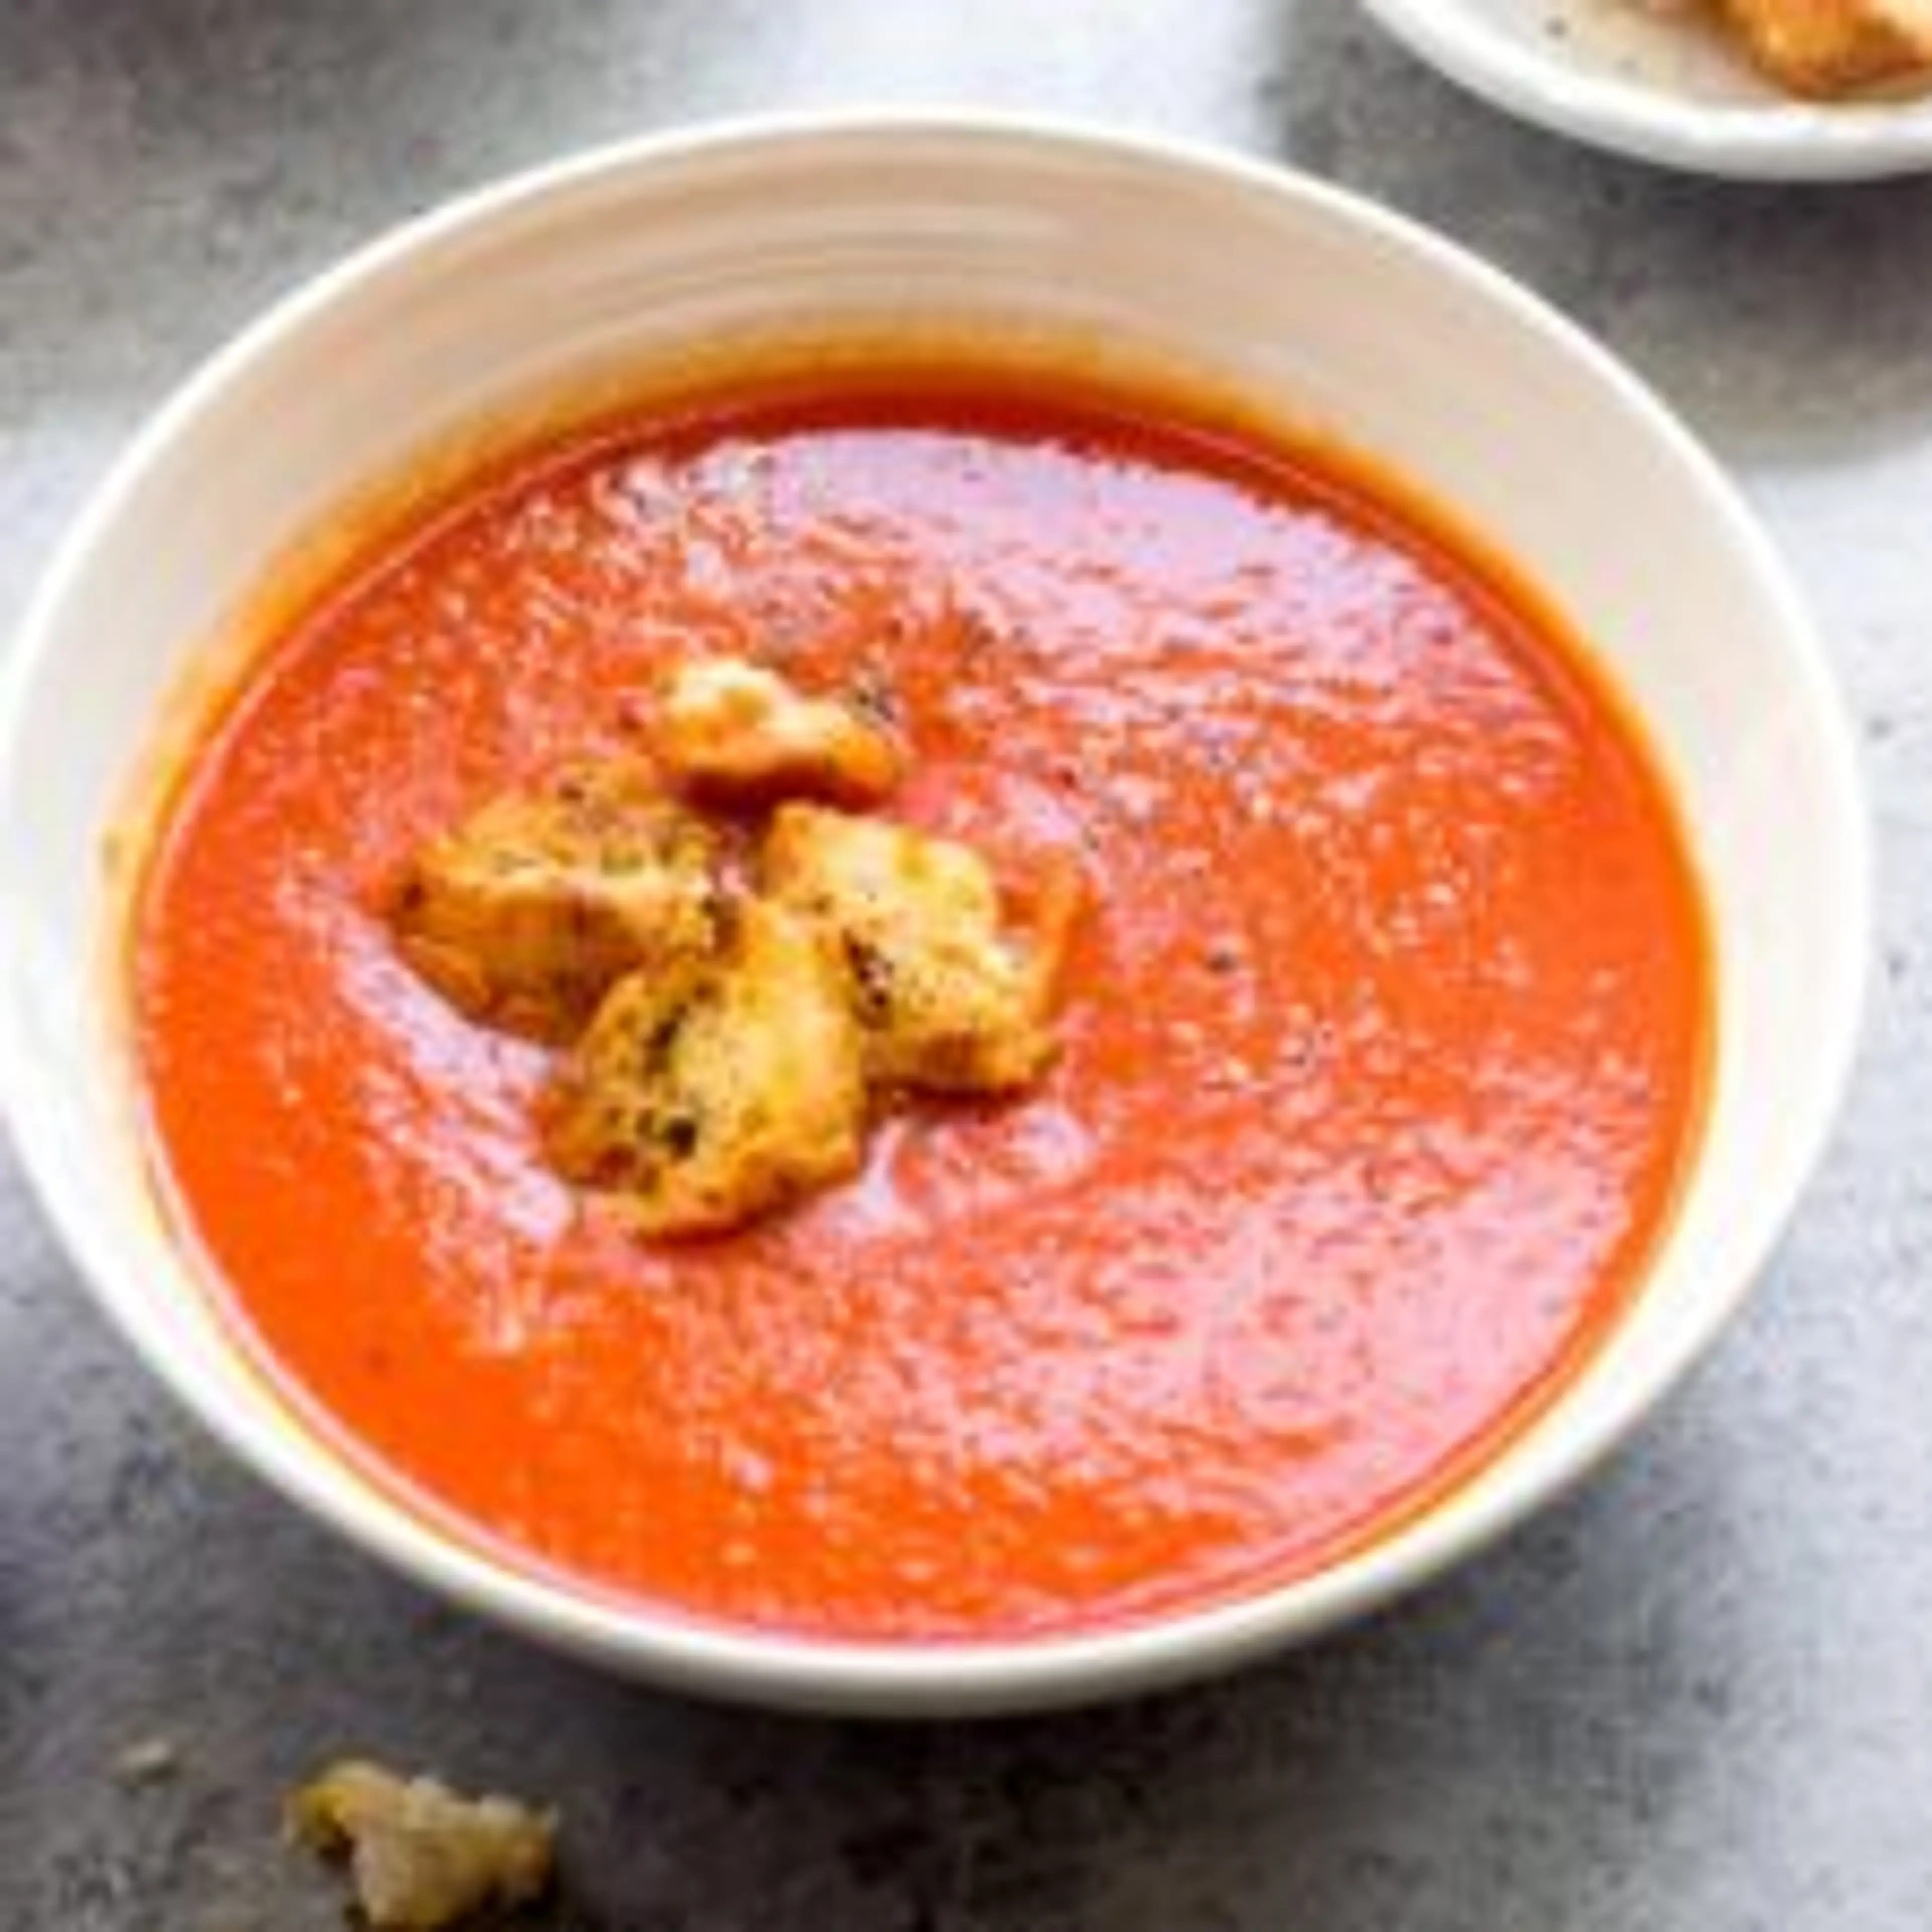 San Marzano Tomato Soup